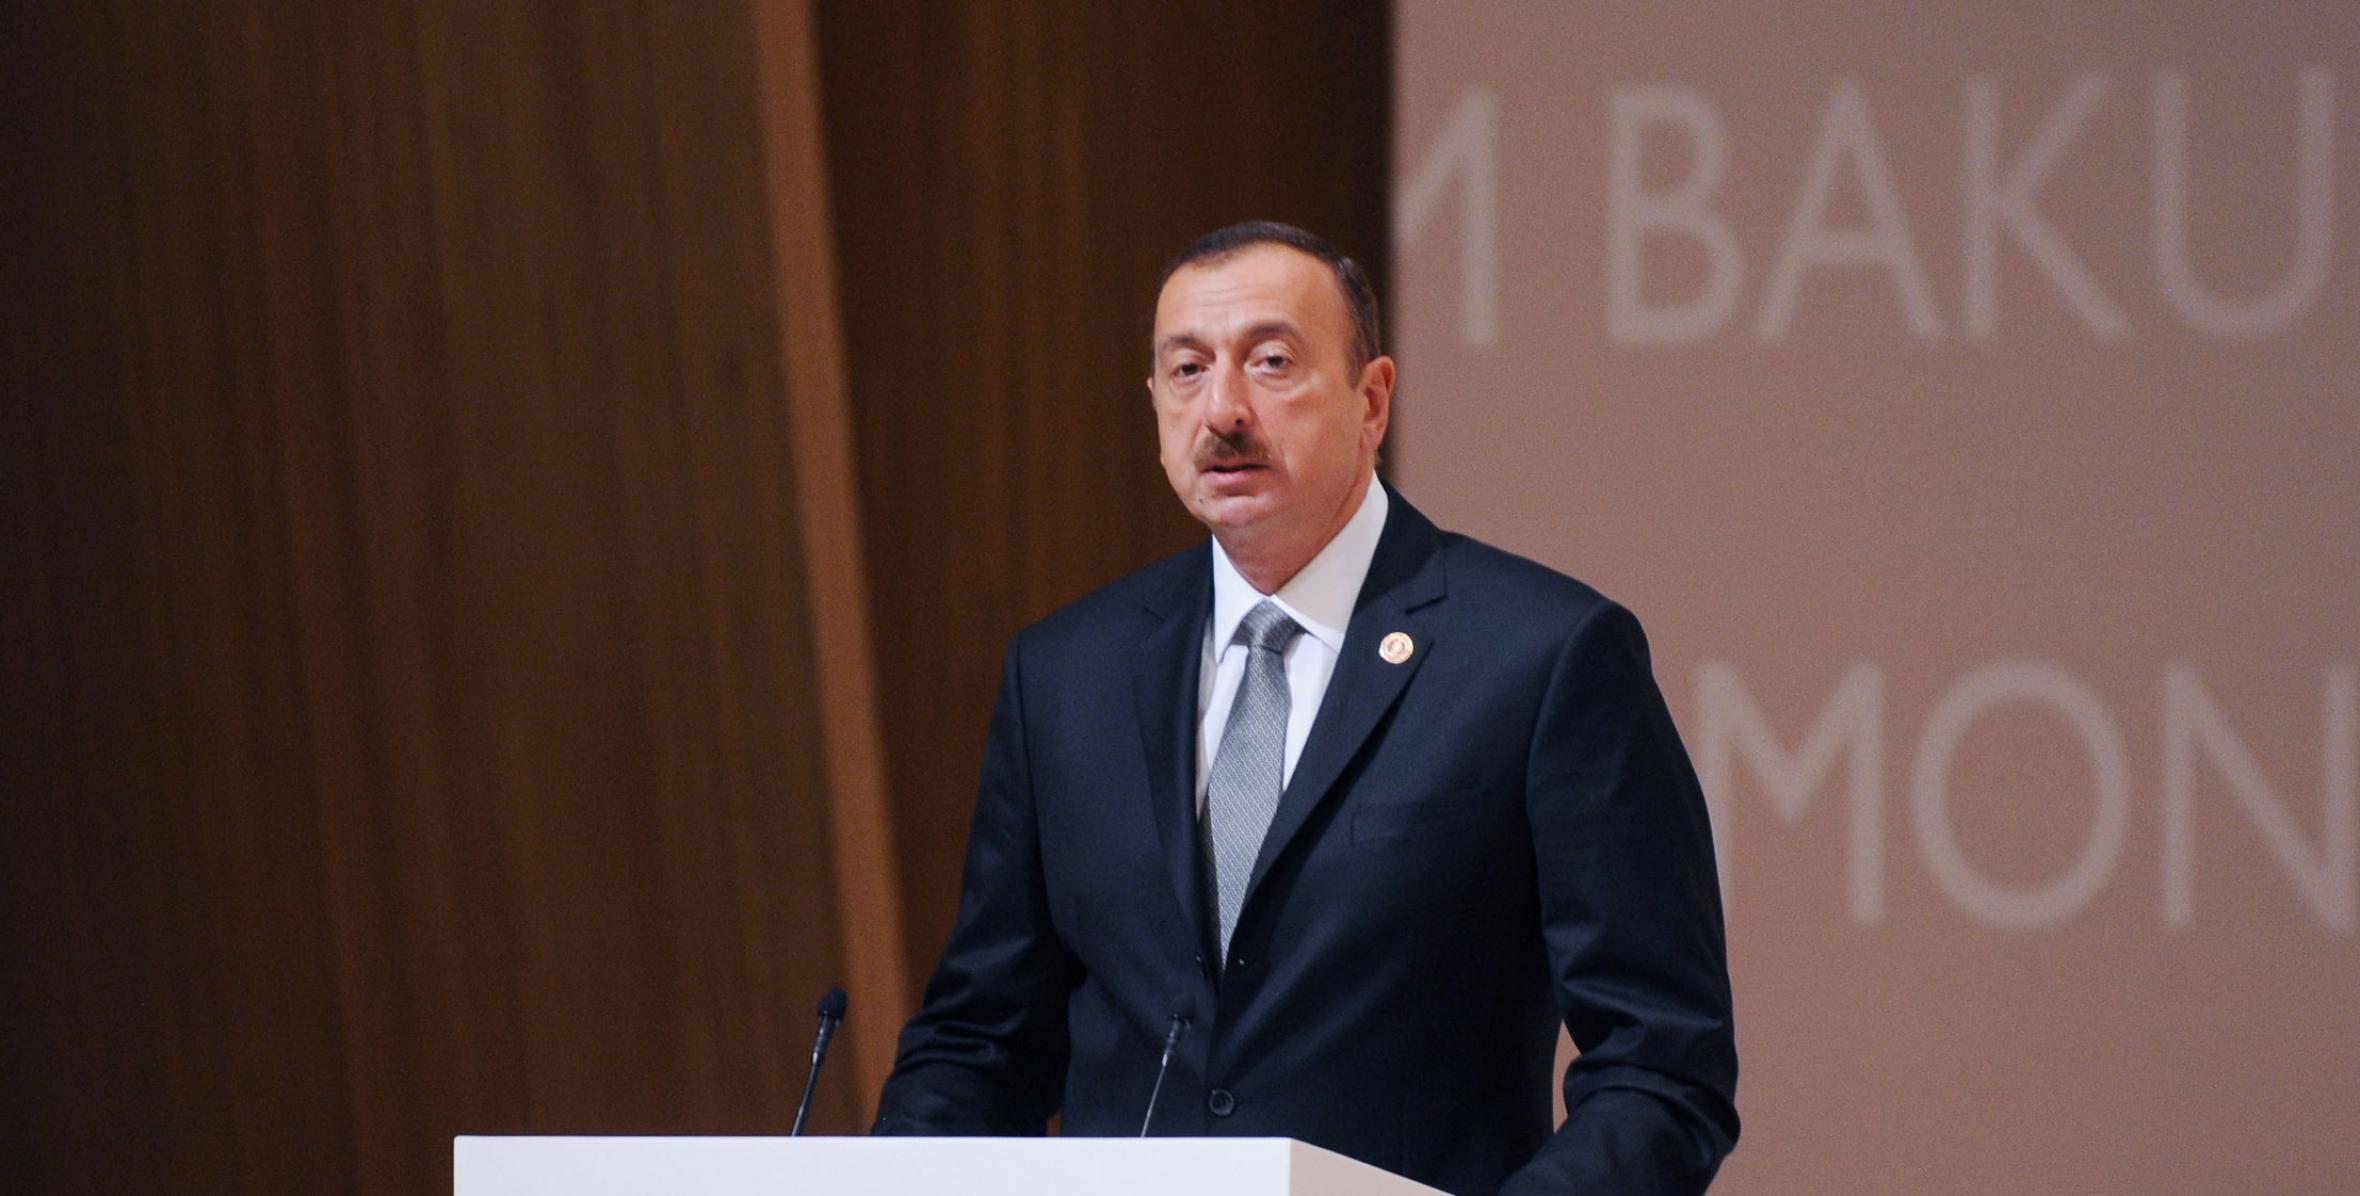 Ильхам Алиев принял участие в официальном открытии Форума Кранс Монтана